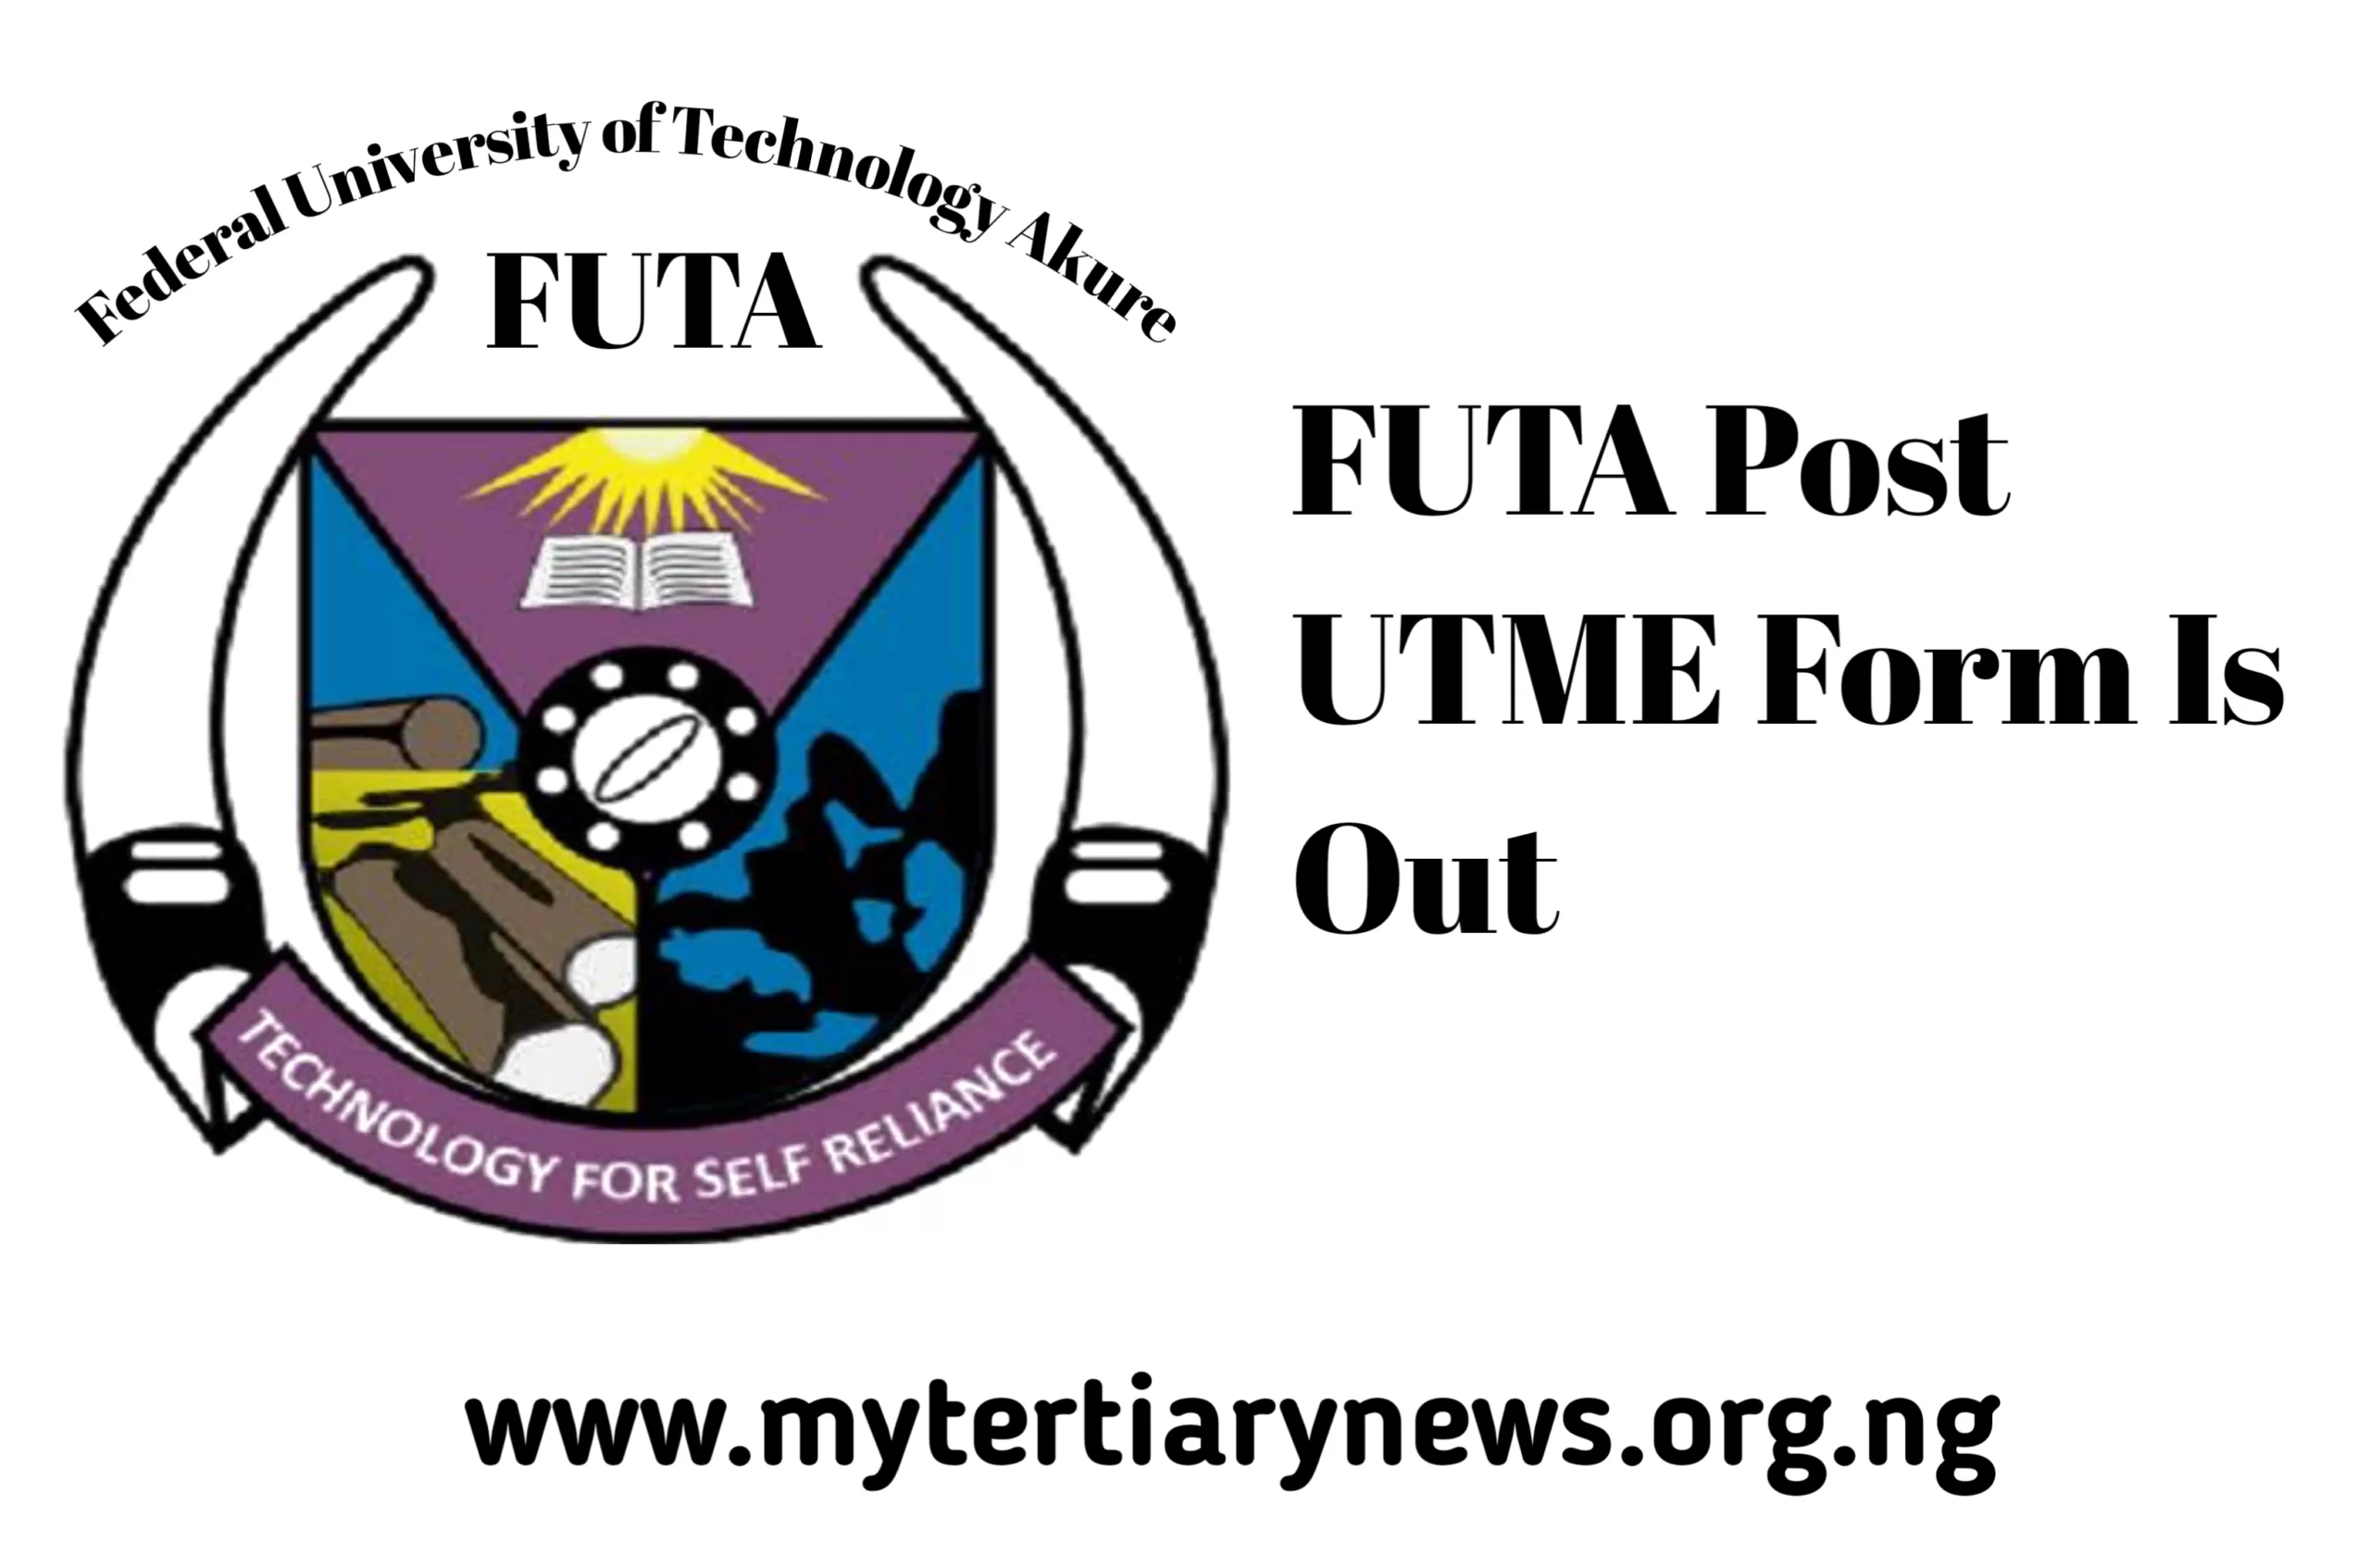 FUTA Image || FUTA Post UTME Form Is Out